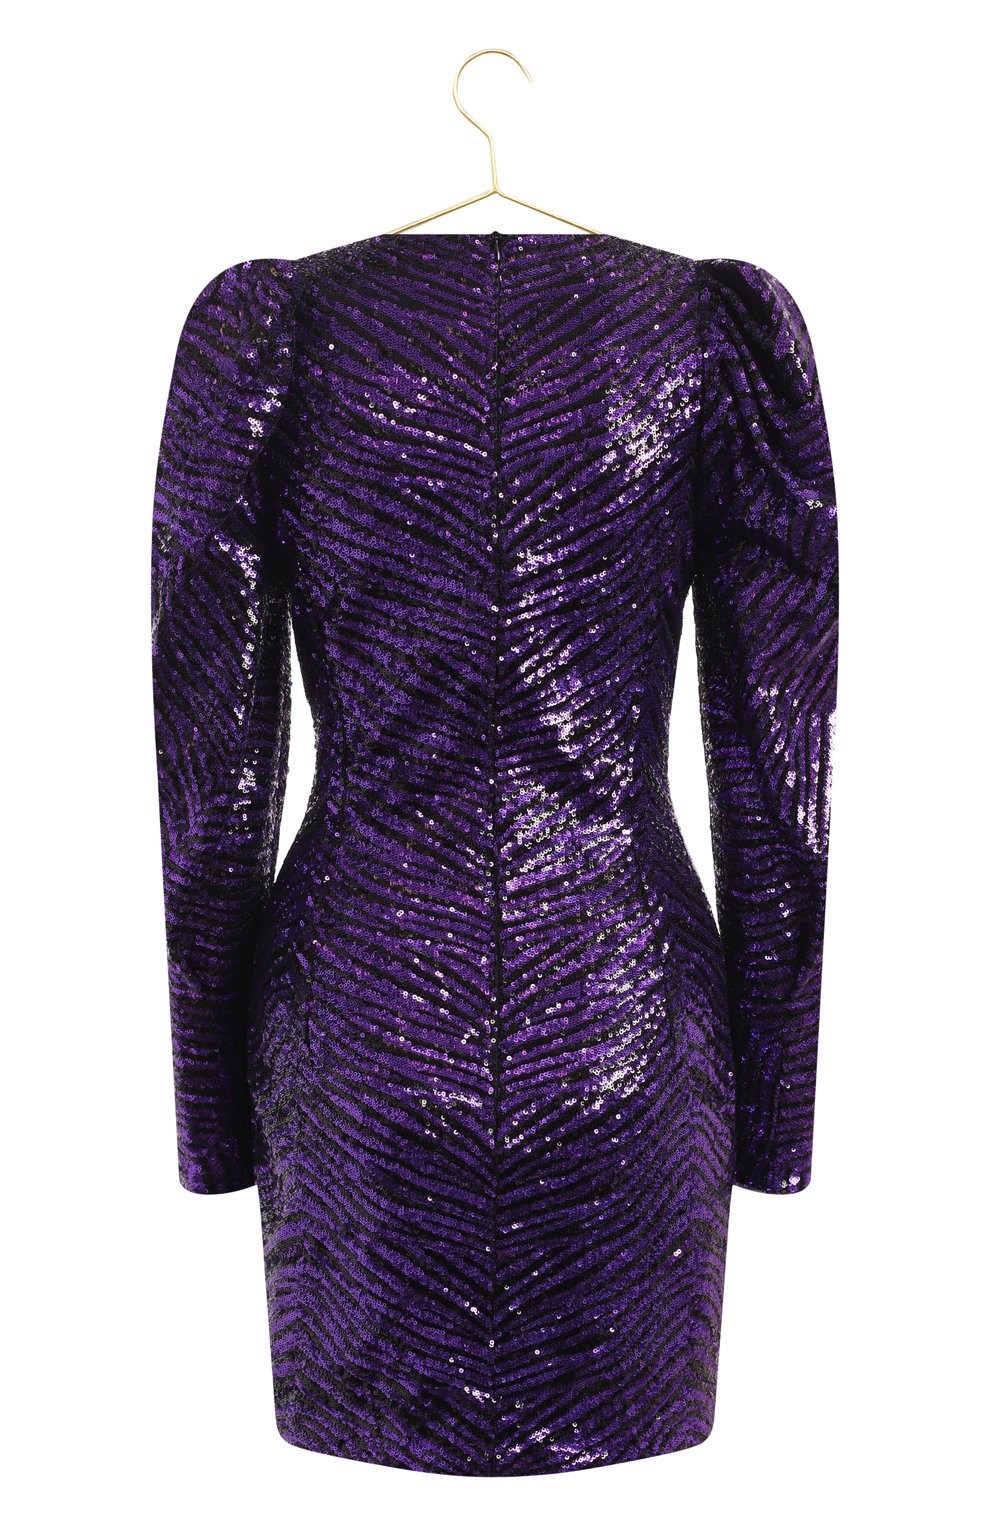 Платье с отделкой пайетками | Alexandre Vauthier | Фиолетовый - 2